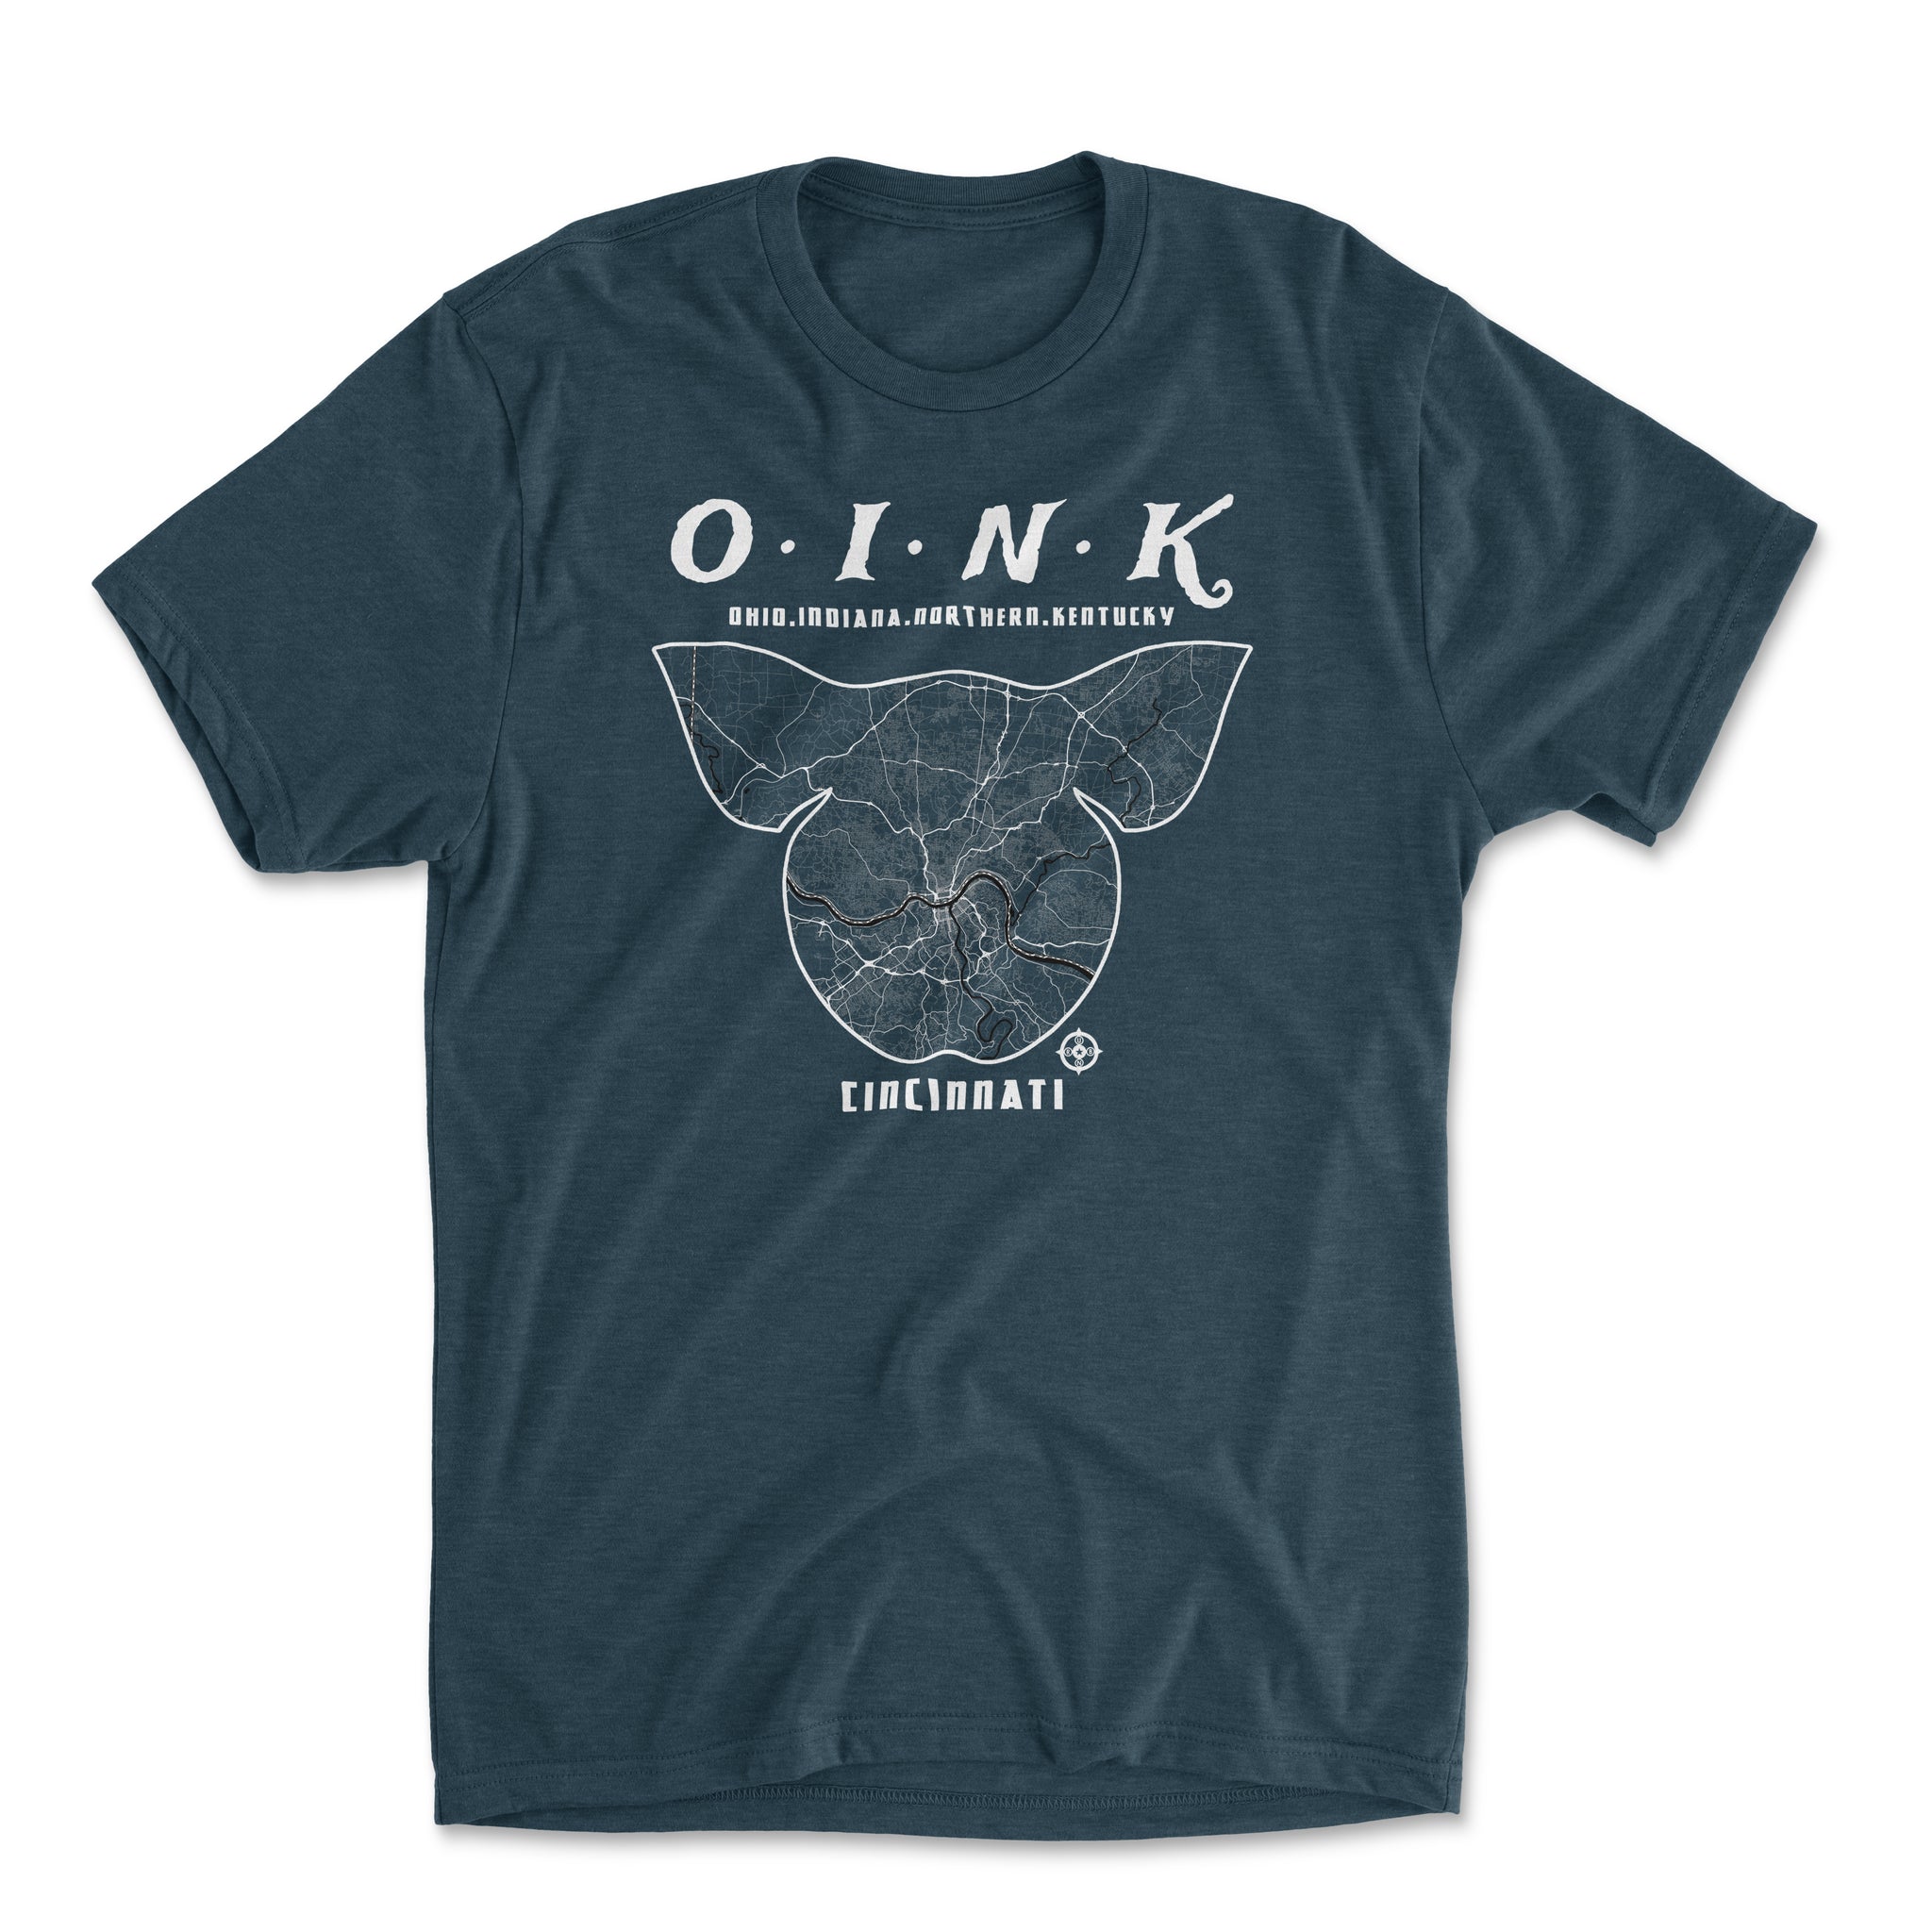 OINK (Ohio-Indiana-Northern Kentucky)